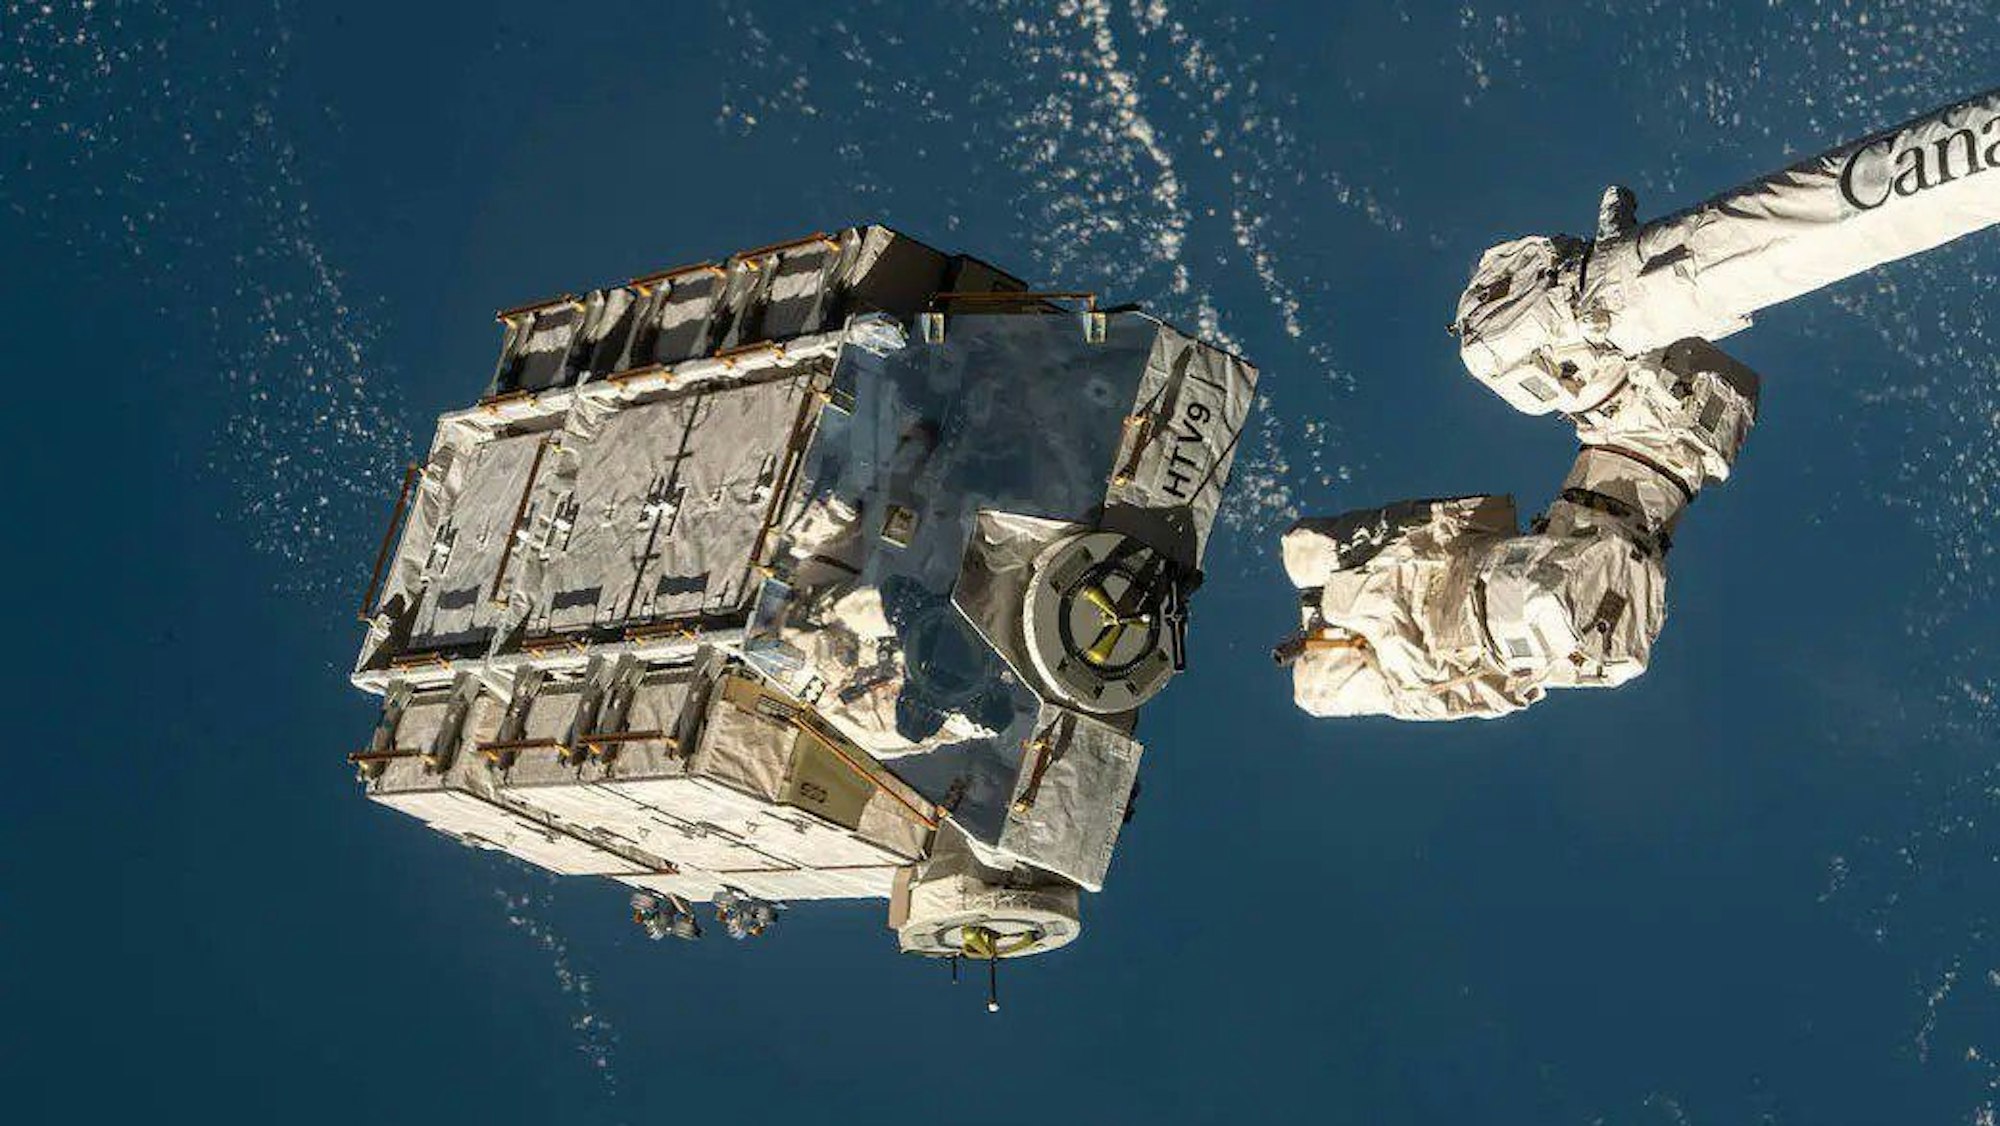 Eine externe Palette mit ausgedienten Nickel-Wasserstoff-Batterien wurde vom Canadarm2-Roboterarm (der Internationalen Raumstation ISS) freigegeben.